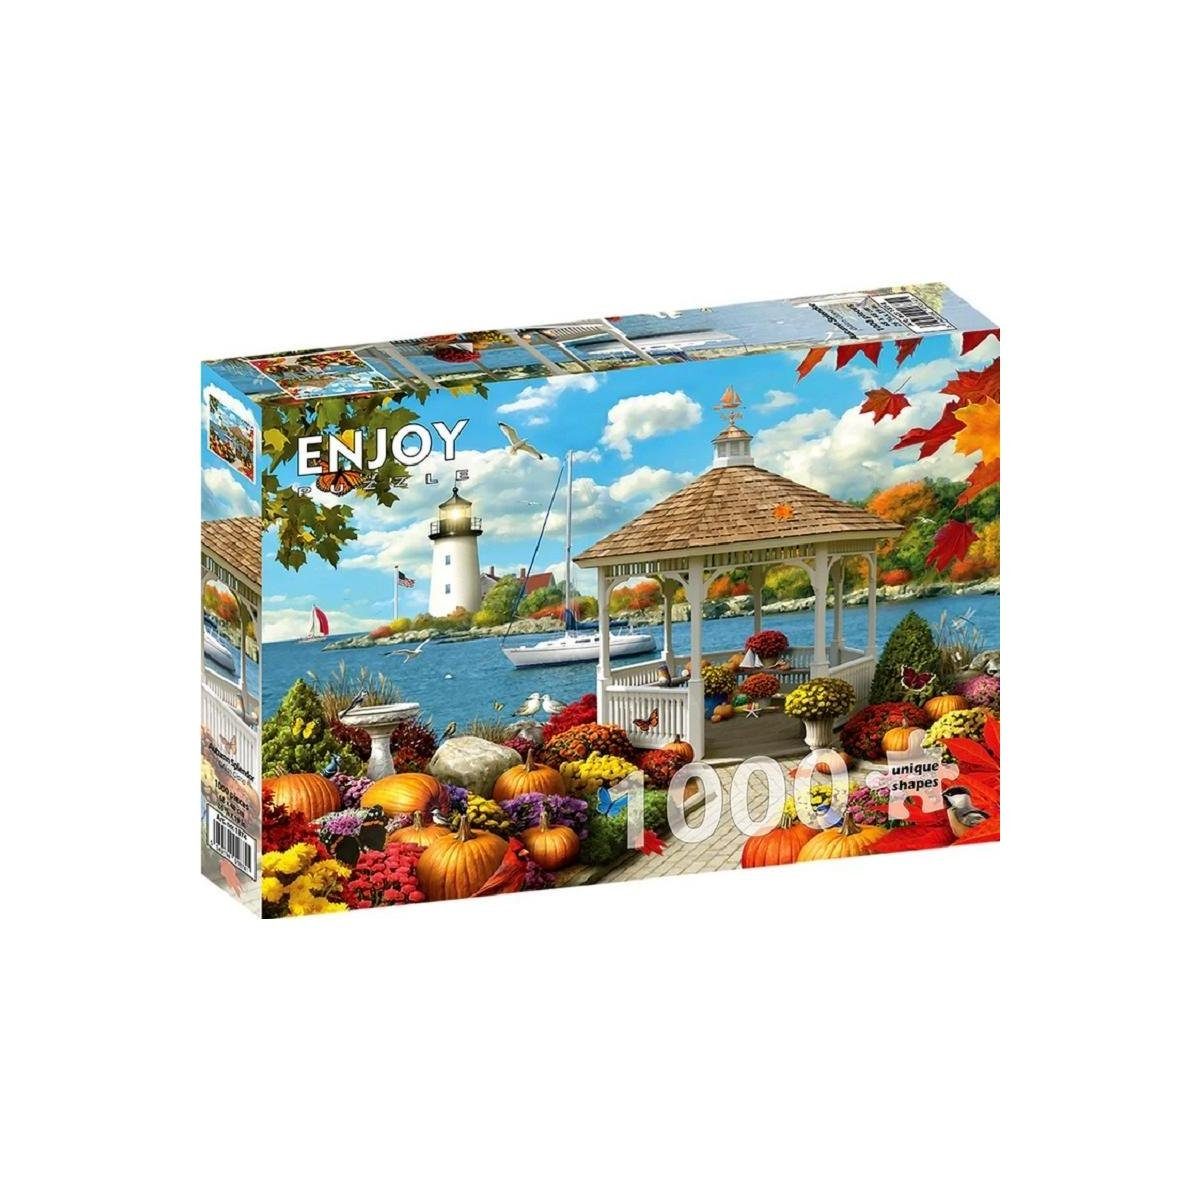 ENJOY Puzzle Puzzle ENJOY-1874 - Herbstpracht, Puzzle, 1000 Teile, 1000 Puzzleteile